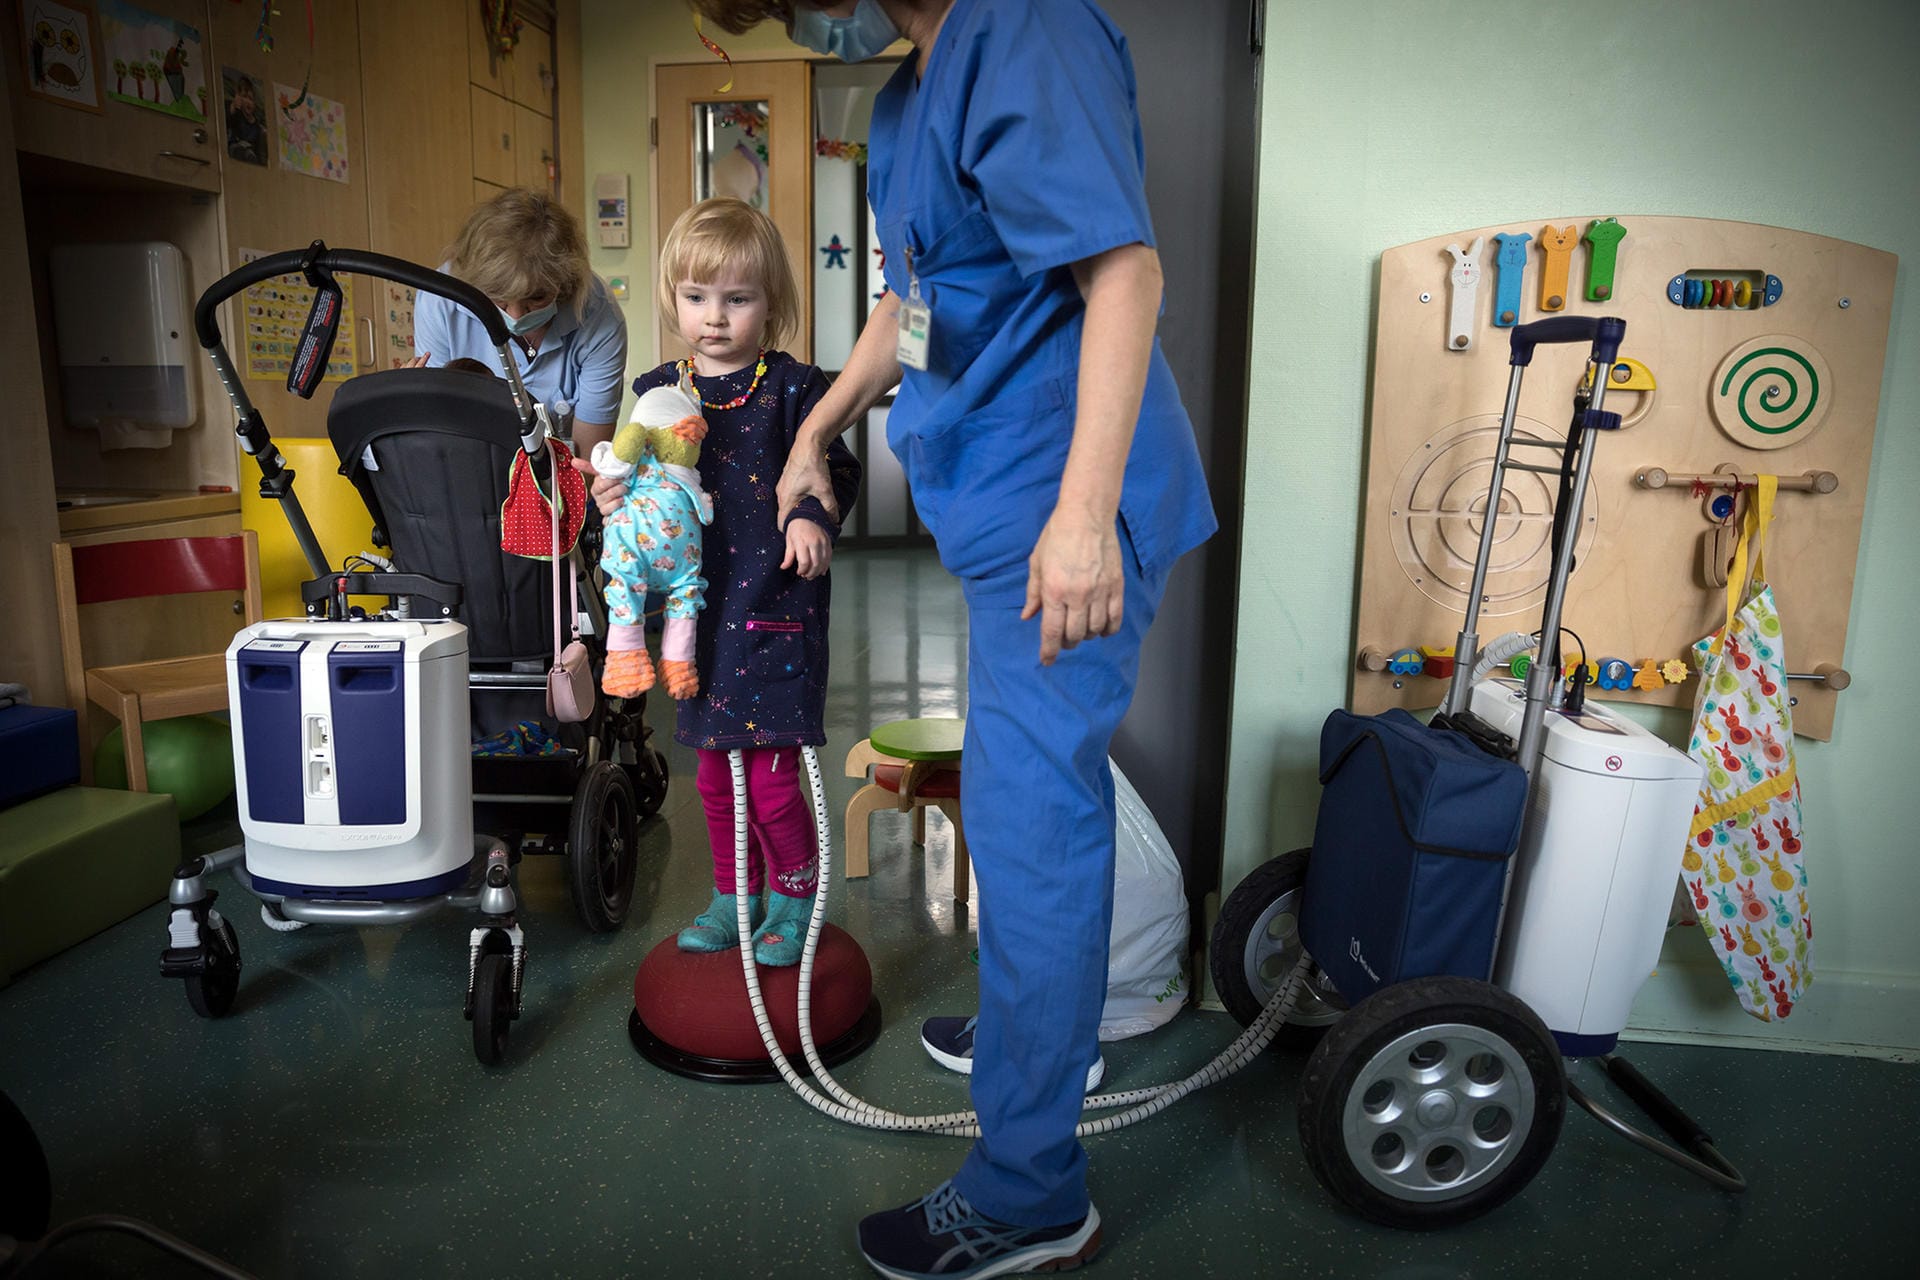 Gordon Welters aus Deutschland erzählt in seinem Bild die Geschichte der dreijährigen Clara. Sie benötigt ein Spenderherz und wohnt aus diesem Grund schon seit Monaten in einem Herzzentrum. Wie sehr die anstrengende Zeit das kleine Mädchen belastet, zeigt das Foto.